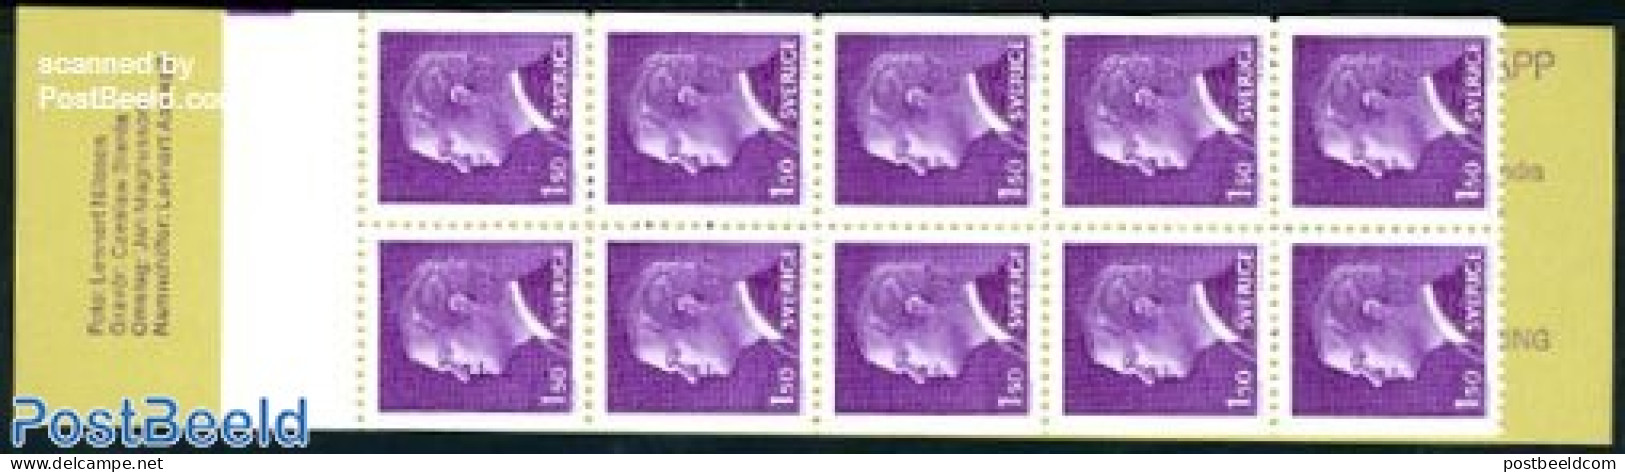 Sweden 1980 Definitives Booklet, Mint NH, Stamp Booklets - Nuevos